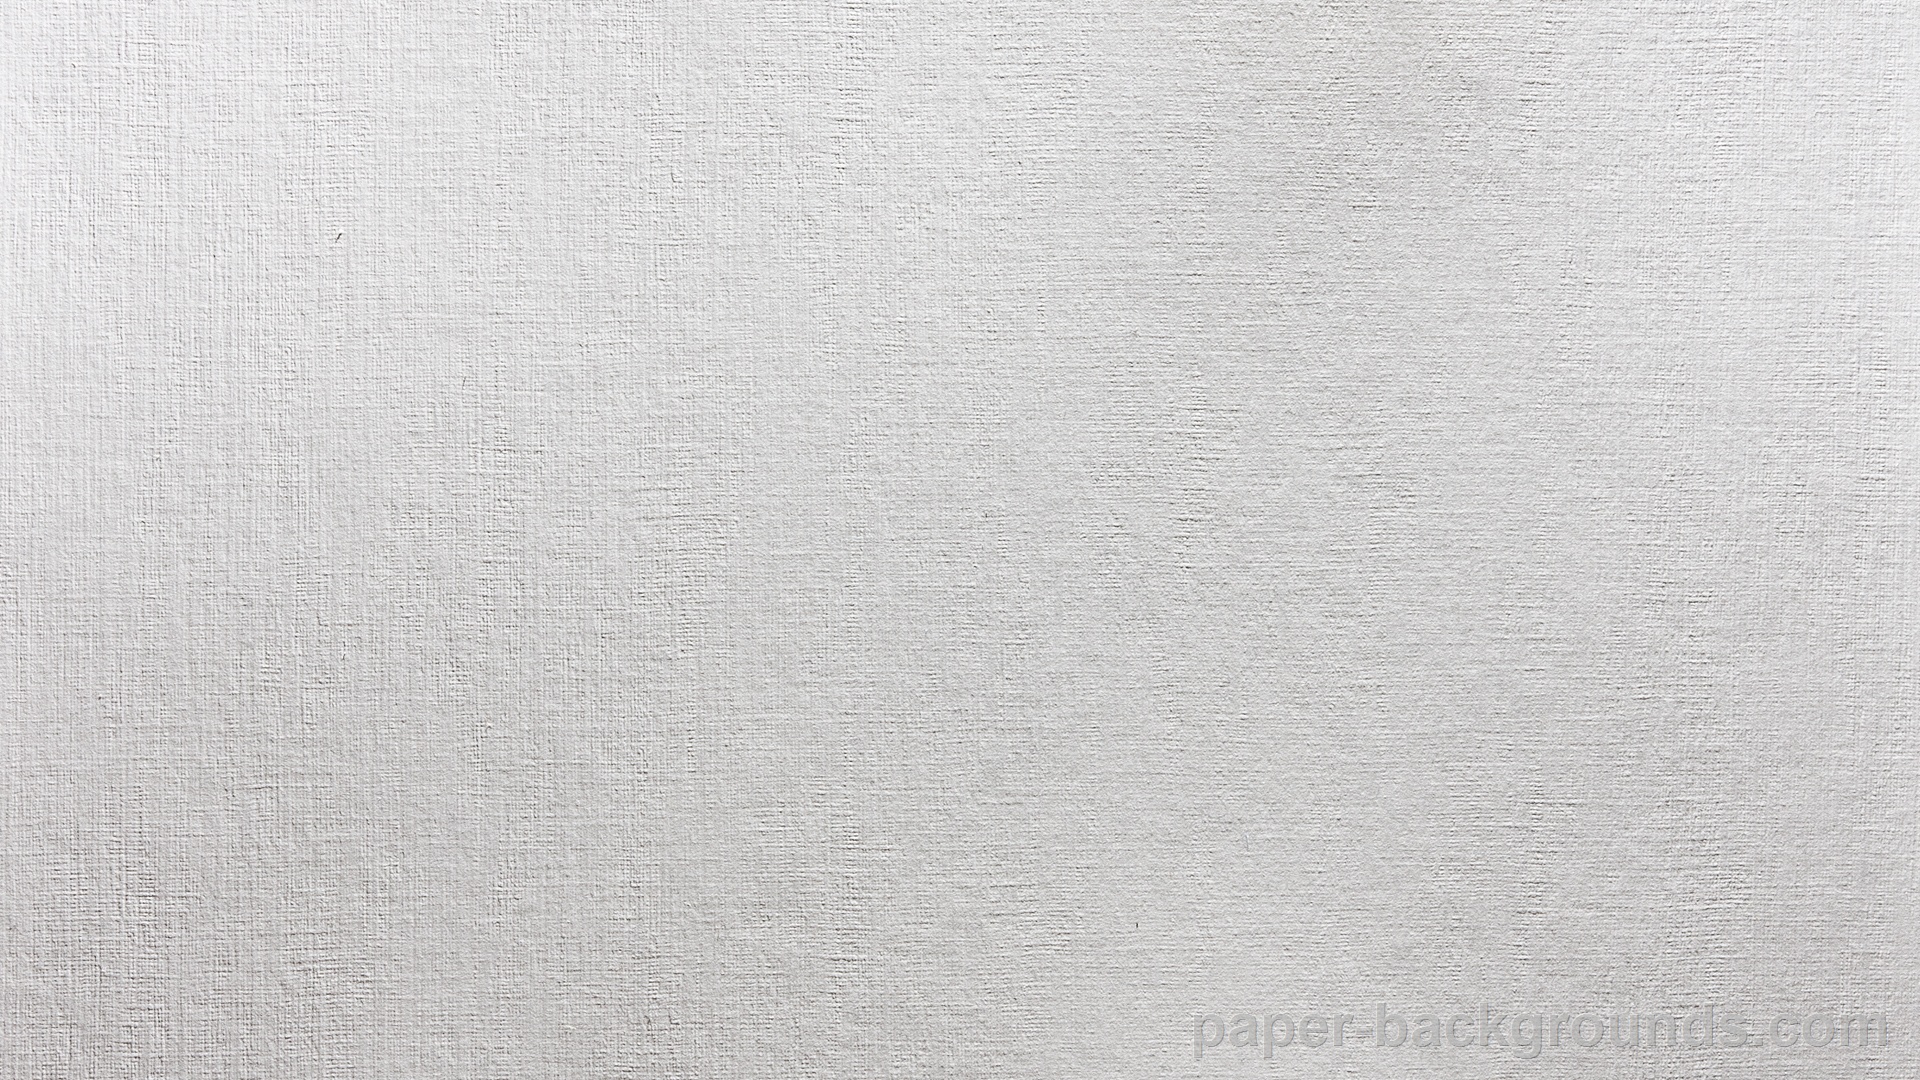 49+] Paper Wallpaper Images - WallpaperSafari